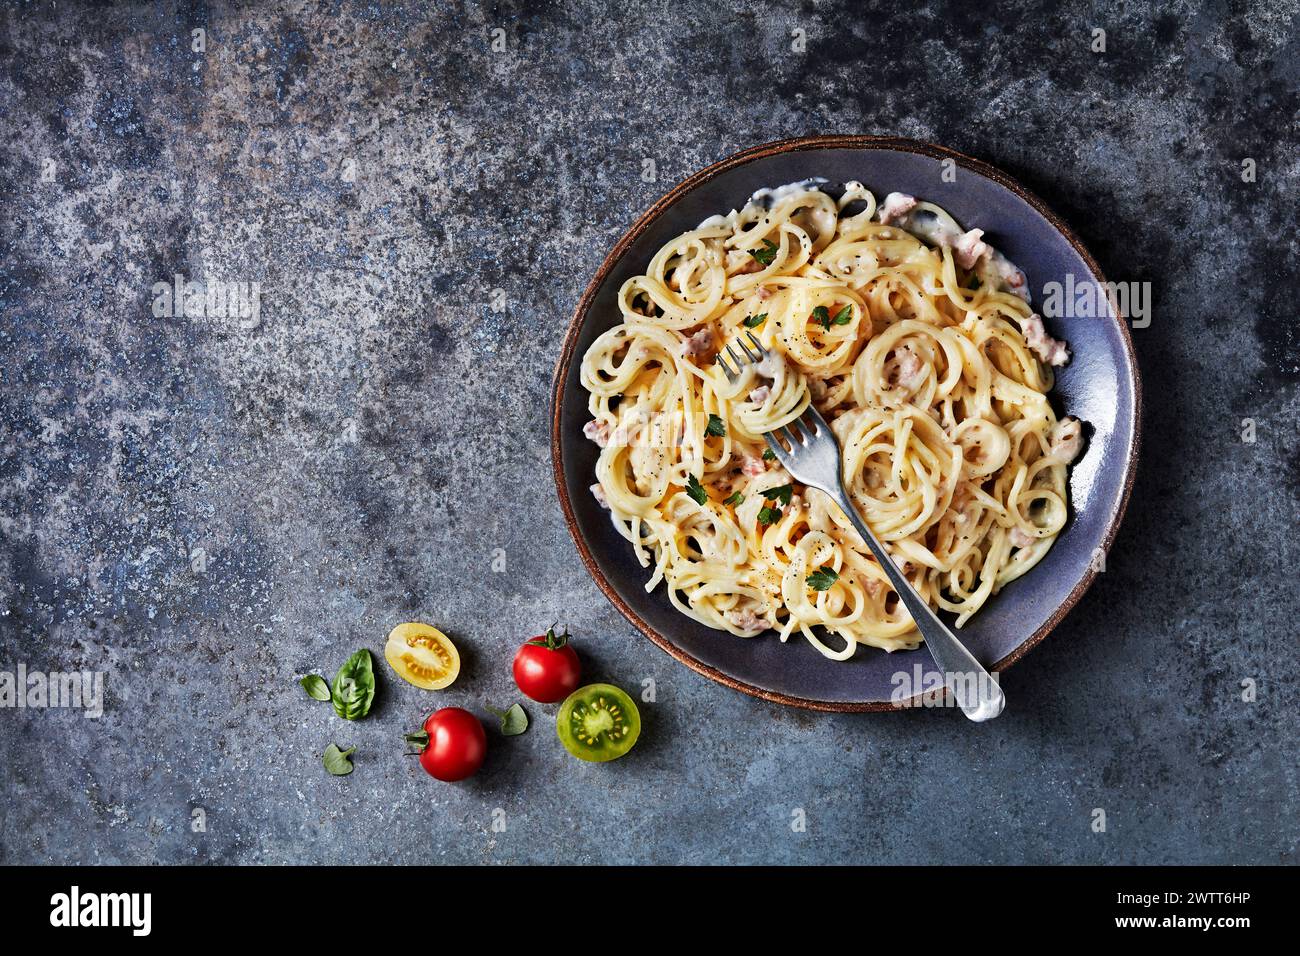 Eine köstliche Schüssel cremiger Pasta auf strukturierter grauer Oberfläche, begleitet von frischen Tomaten und Basilikumblättern. Stockfoto